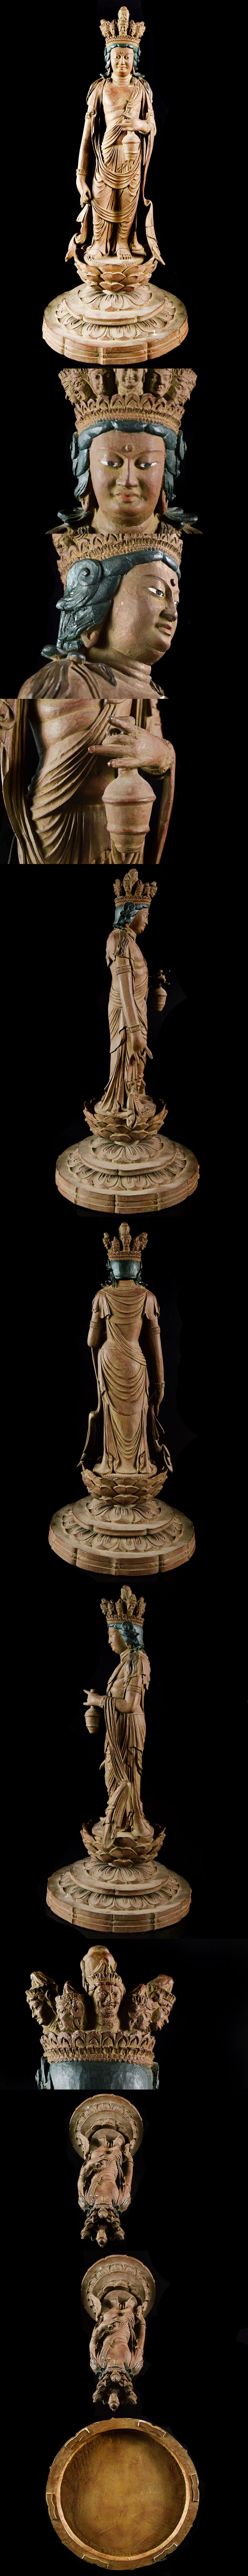 【安い最安値】某有名寺院委託品 仏教美術 細密彫刻十一面観音立像 仏像 高さ54cm 古美術品(釈迦阿弥陀如来旧家蔵出)BC9998 CTJB264 仏像